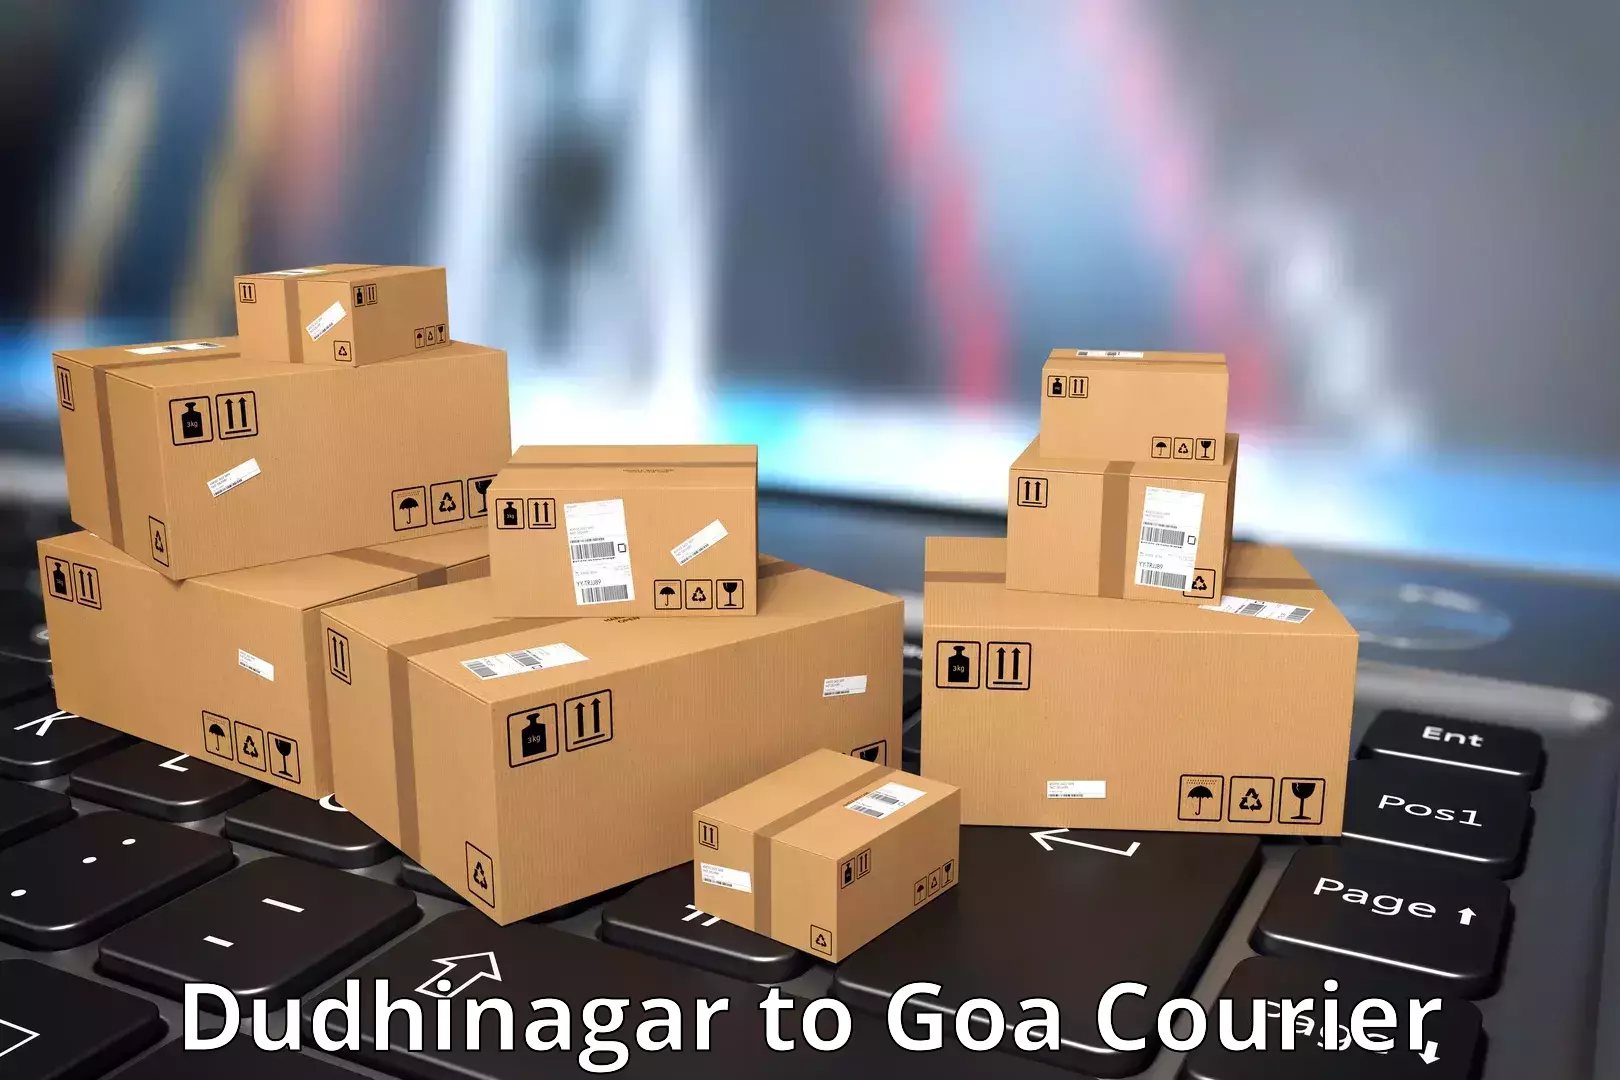 Express package handling Dudhinagar to NIT Goa